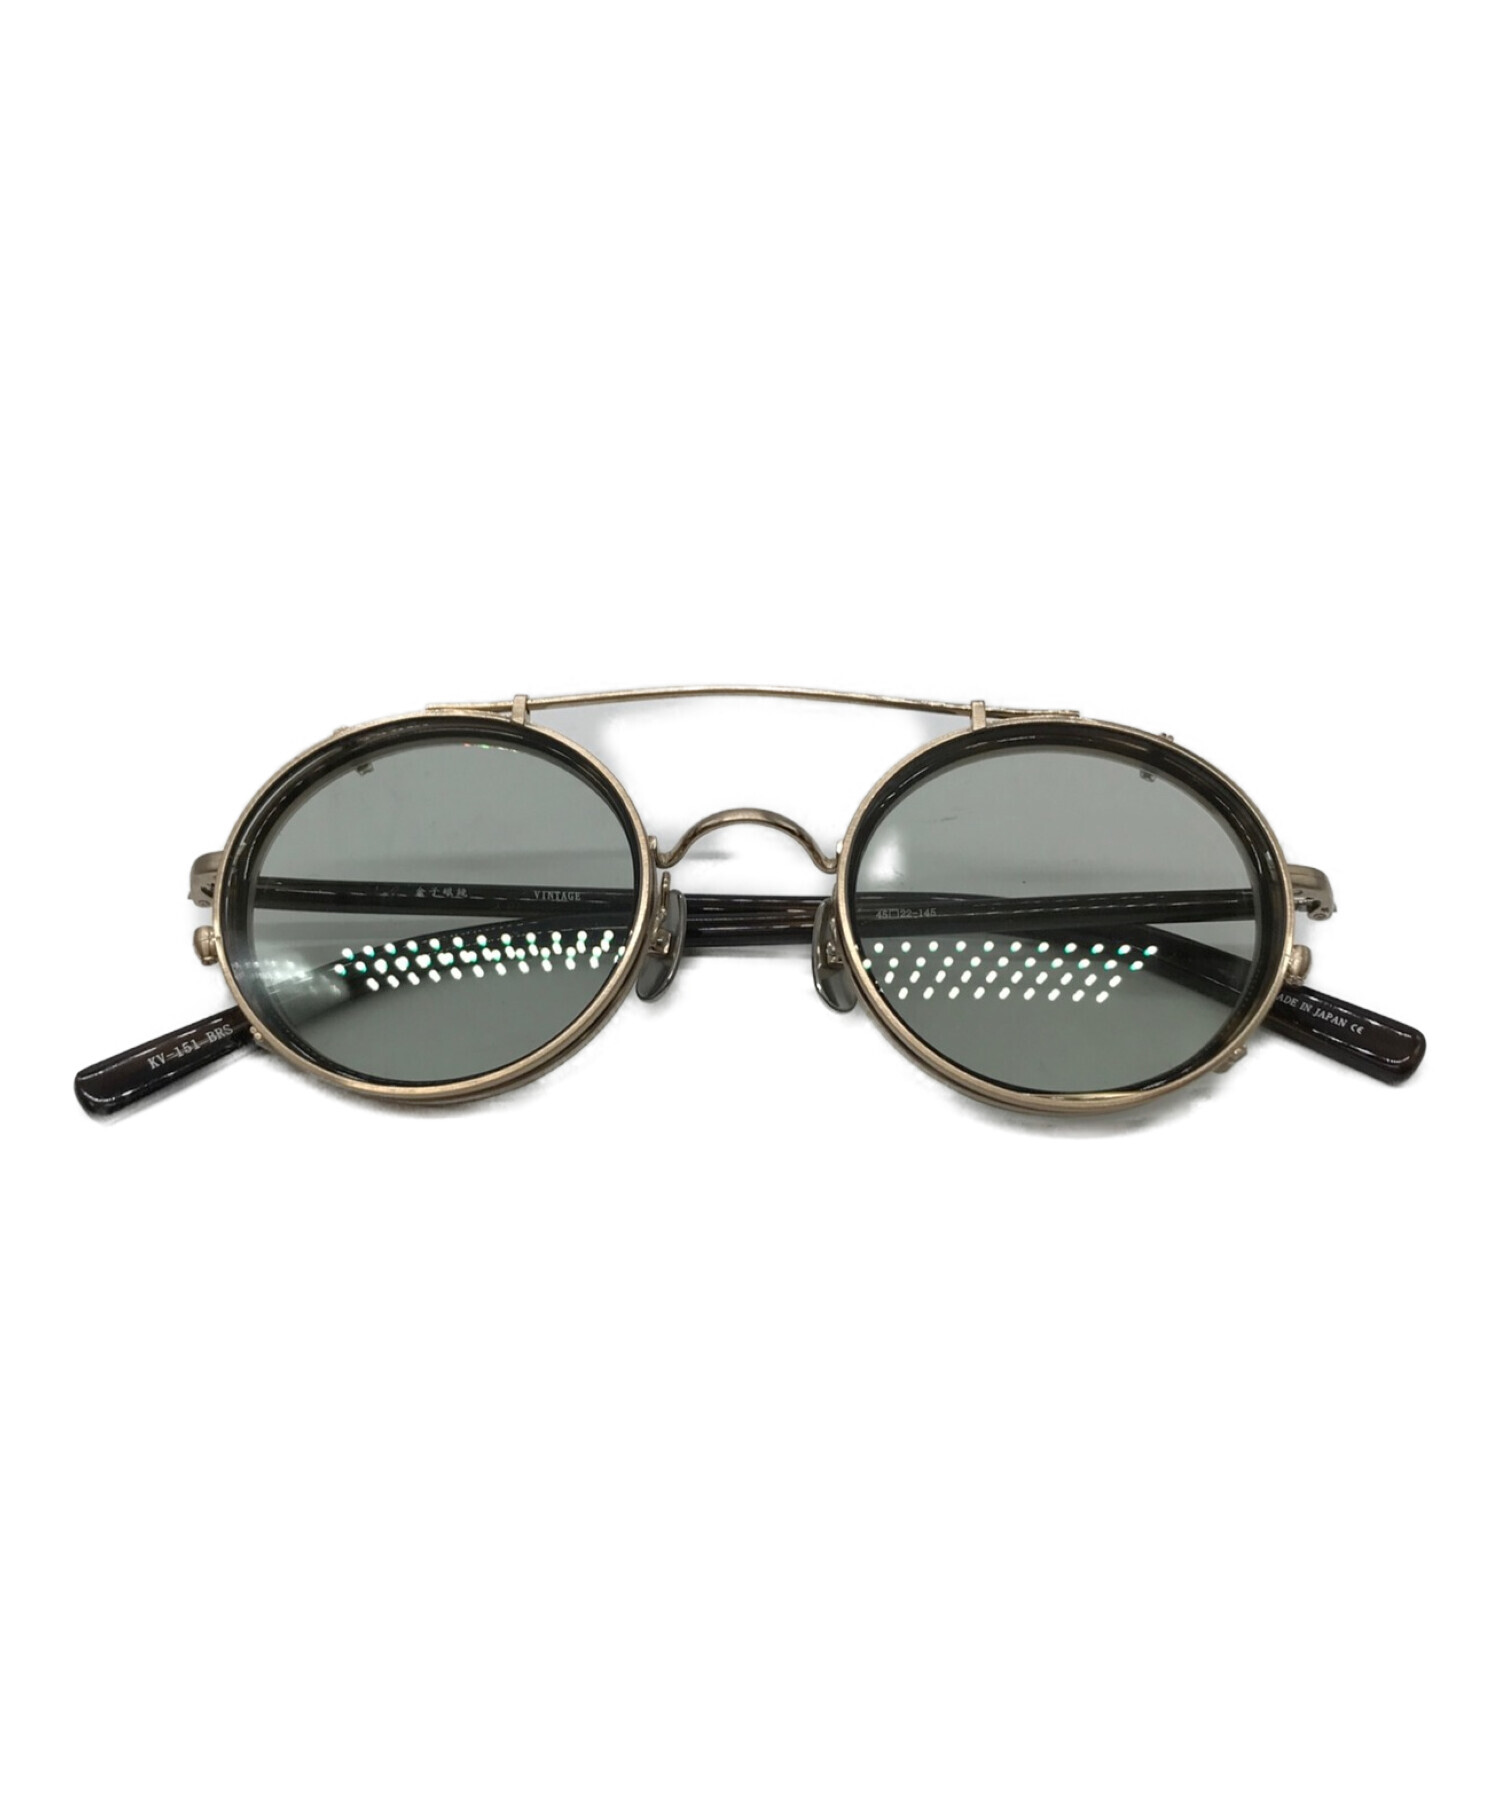 金子眼鏡 (カネコメガネ) サングラス シルバー サイズ:45□22-145